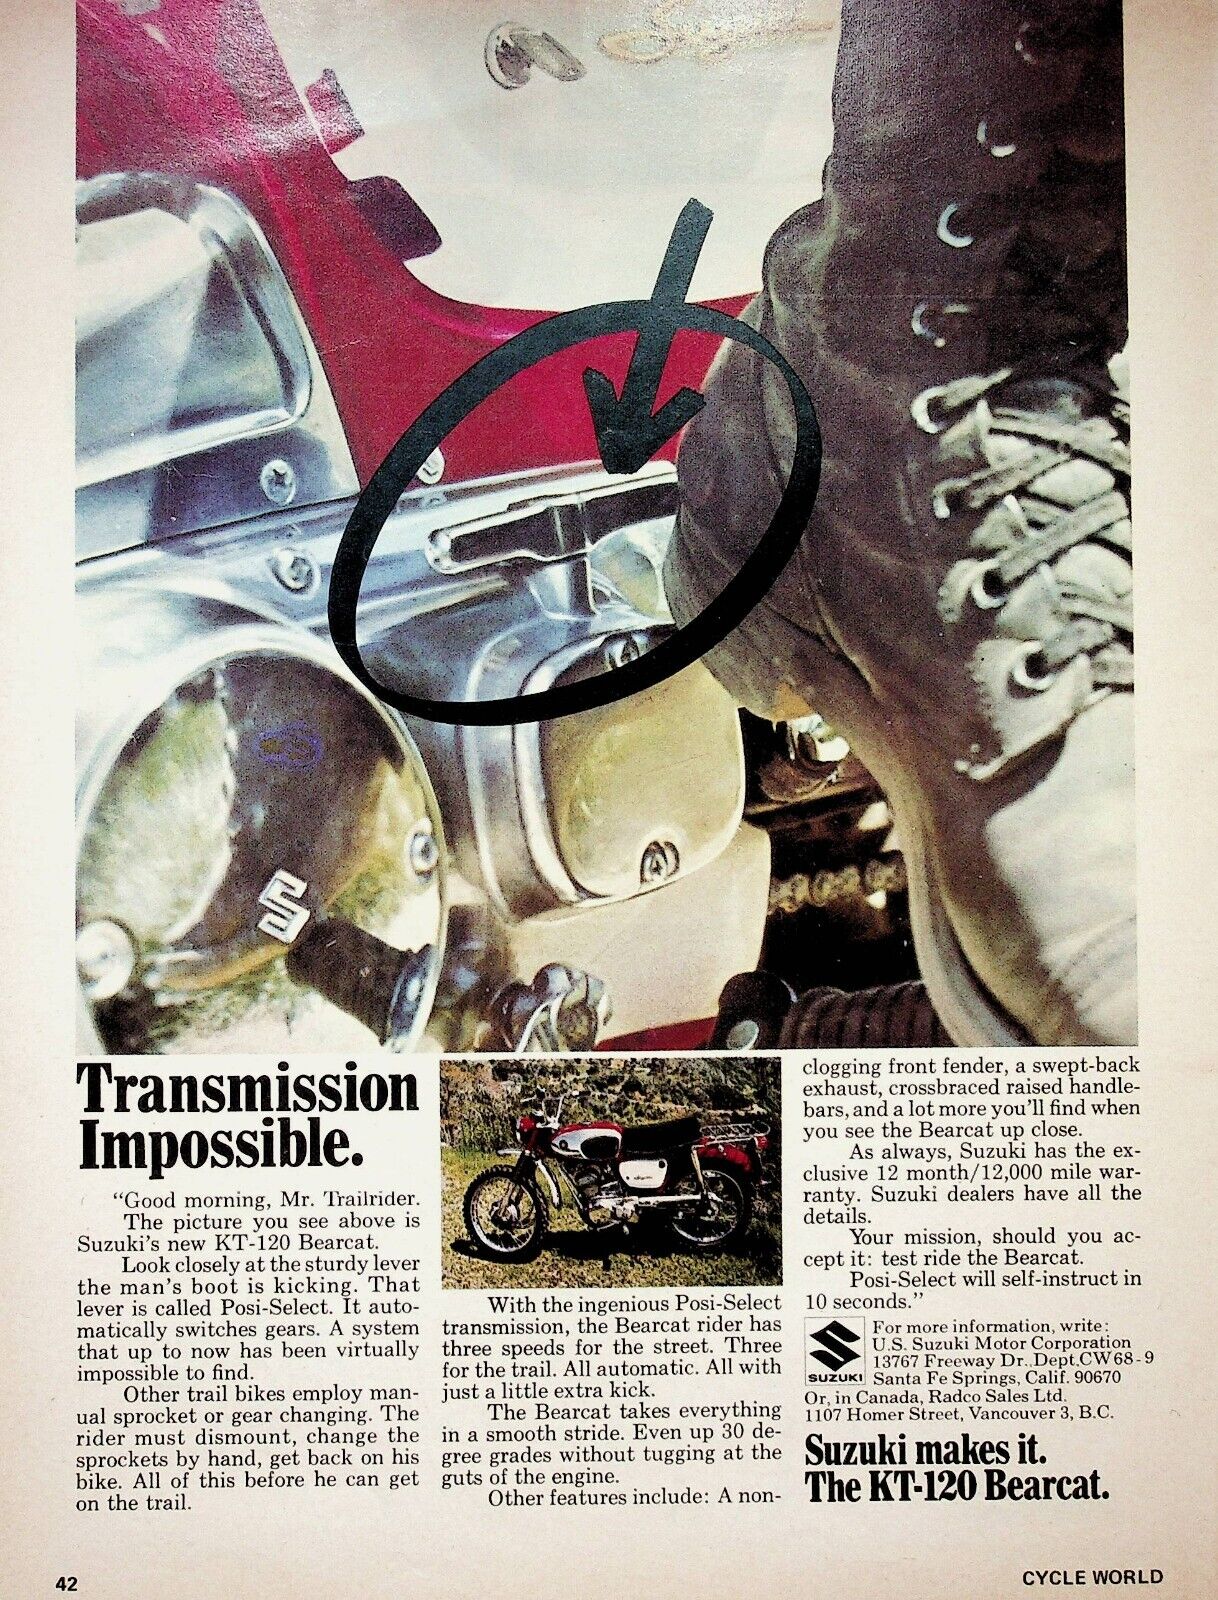 1968 Suzuki Bearcat KT120 Motorcycle Posi-Select Transmission - Vintage Ad